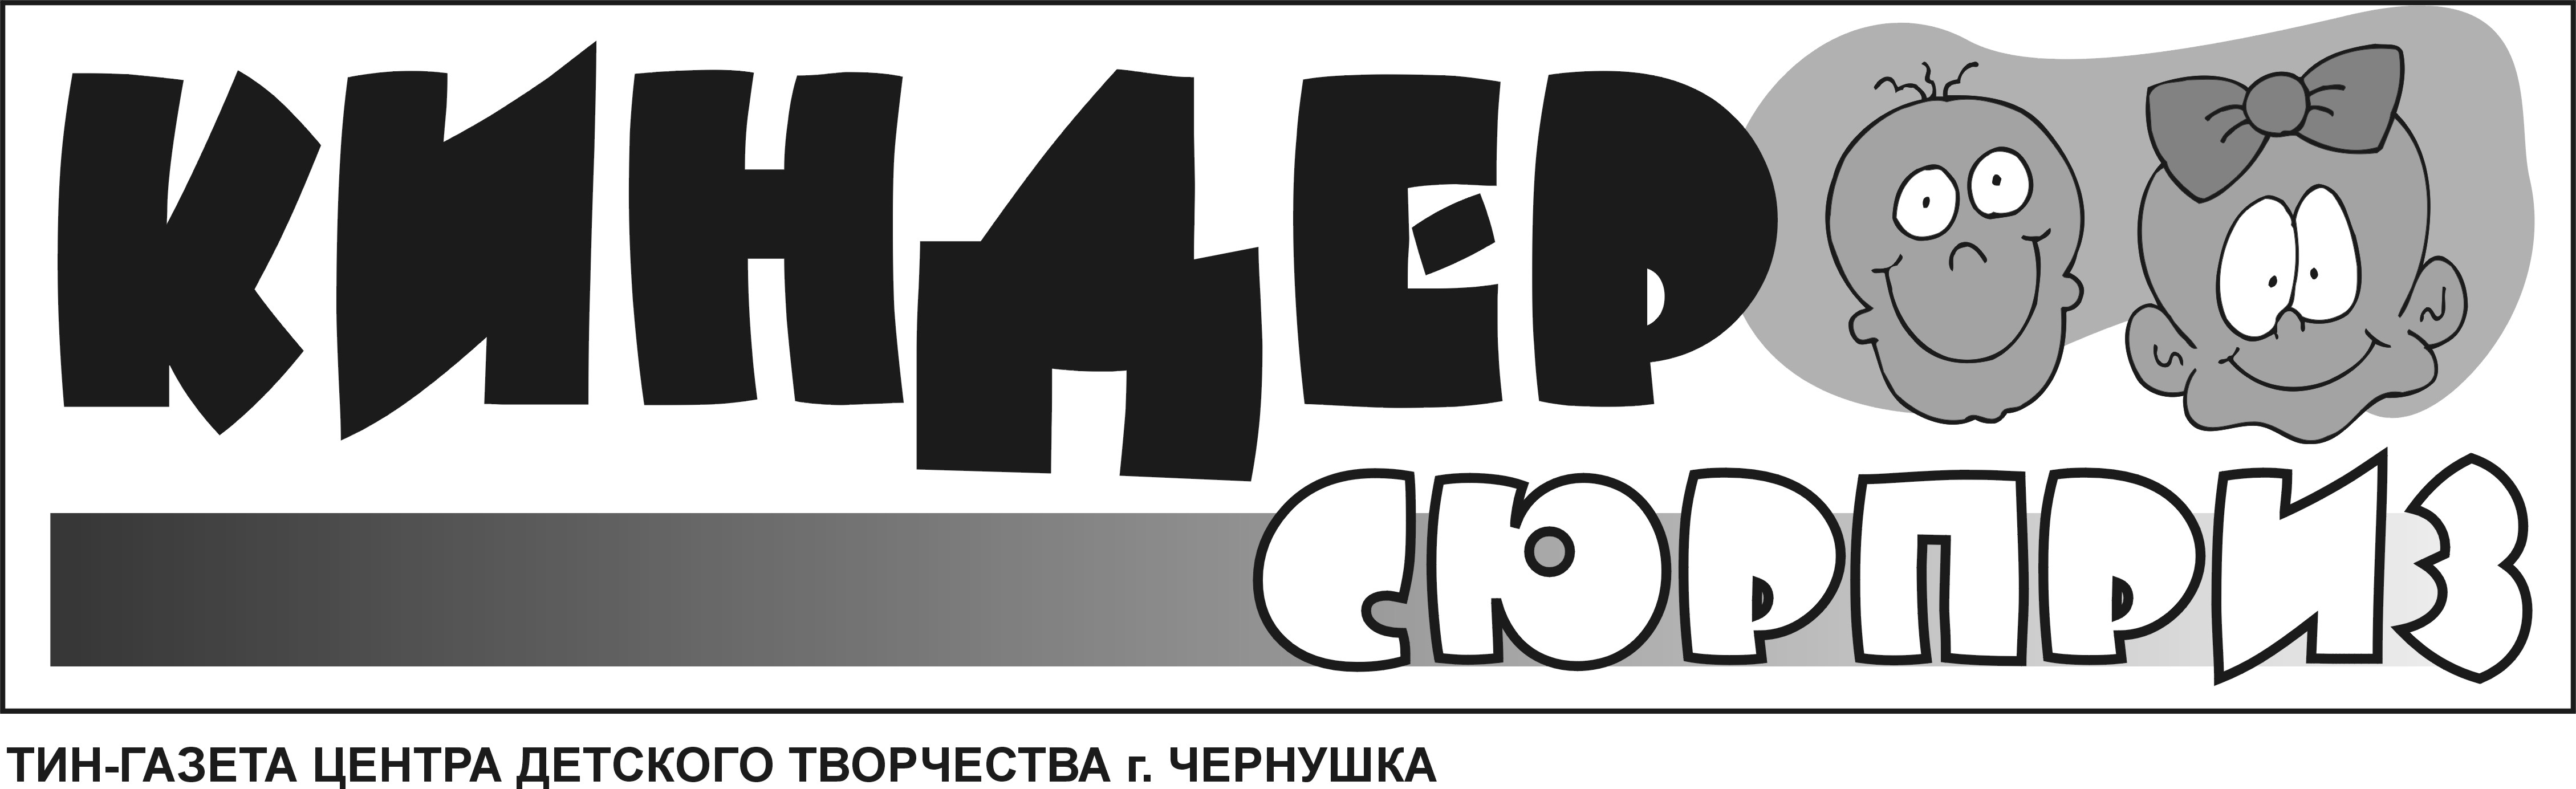 Логотип детской газеты (шапка)